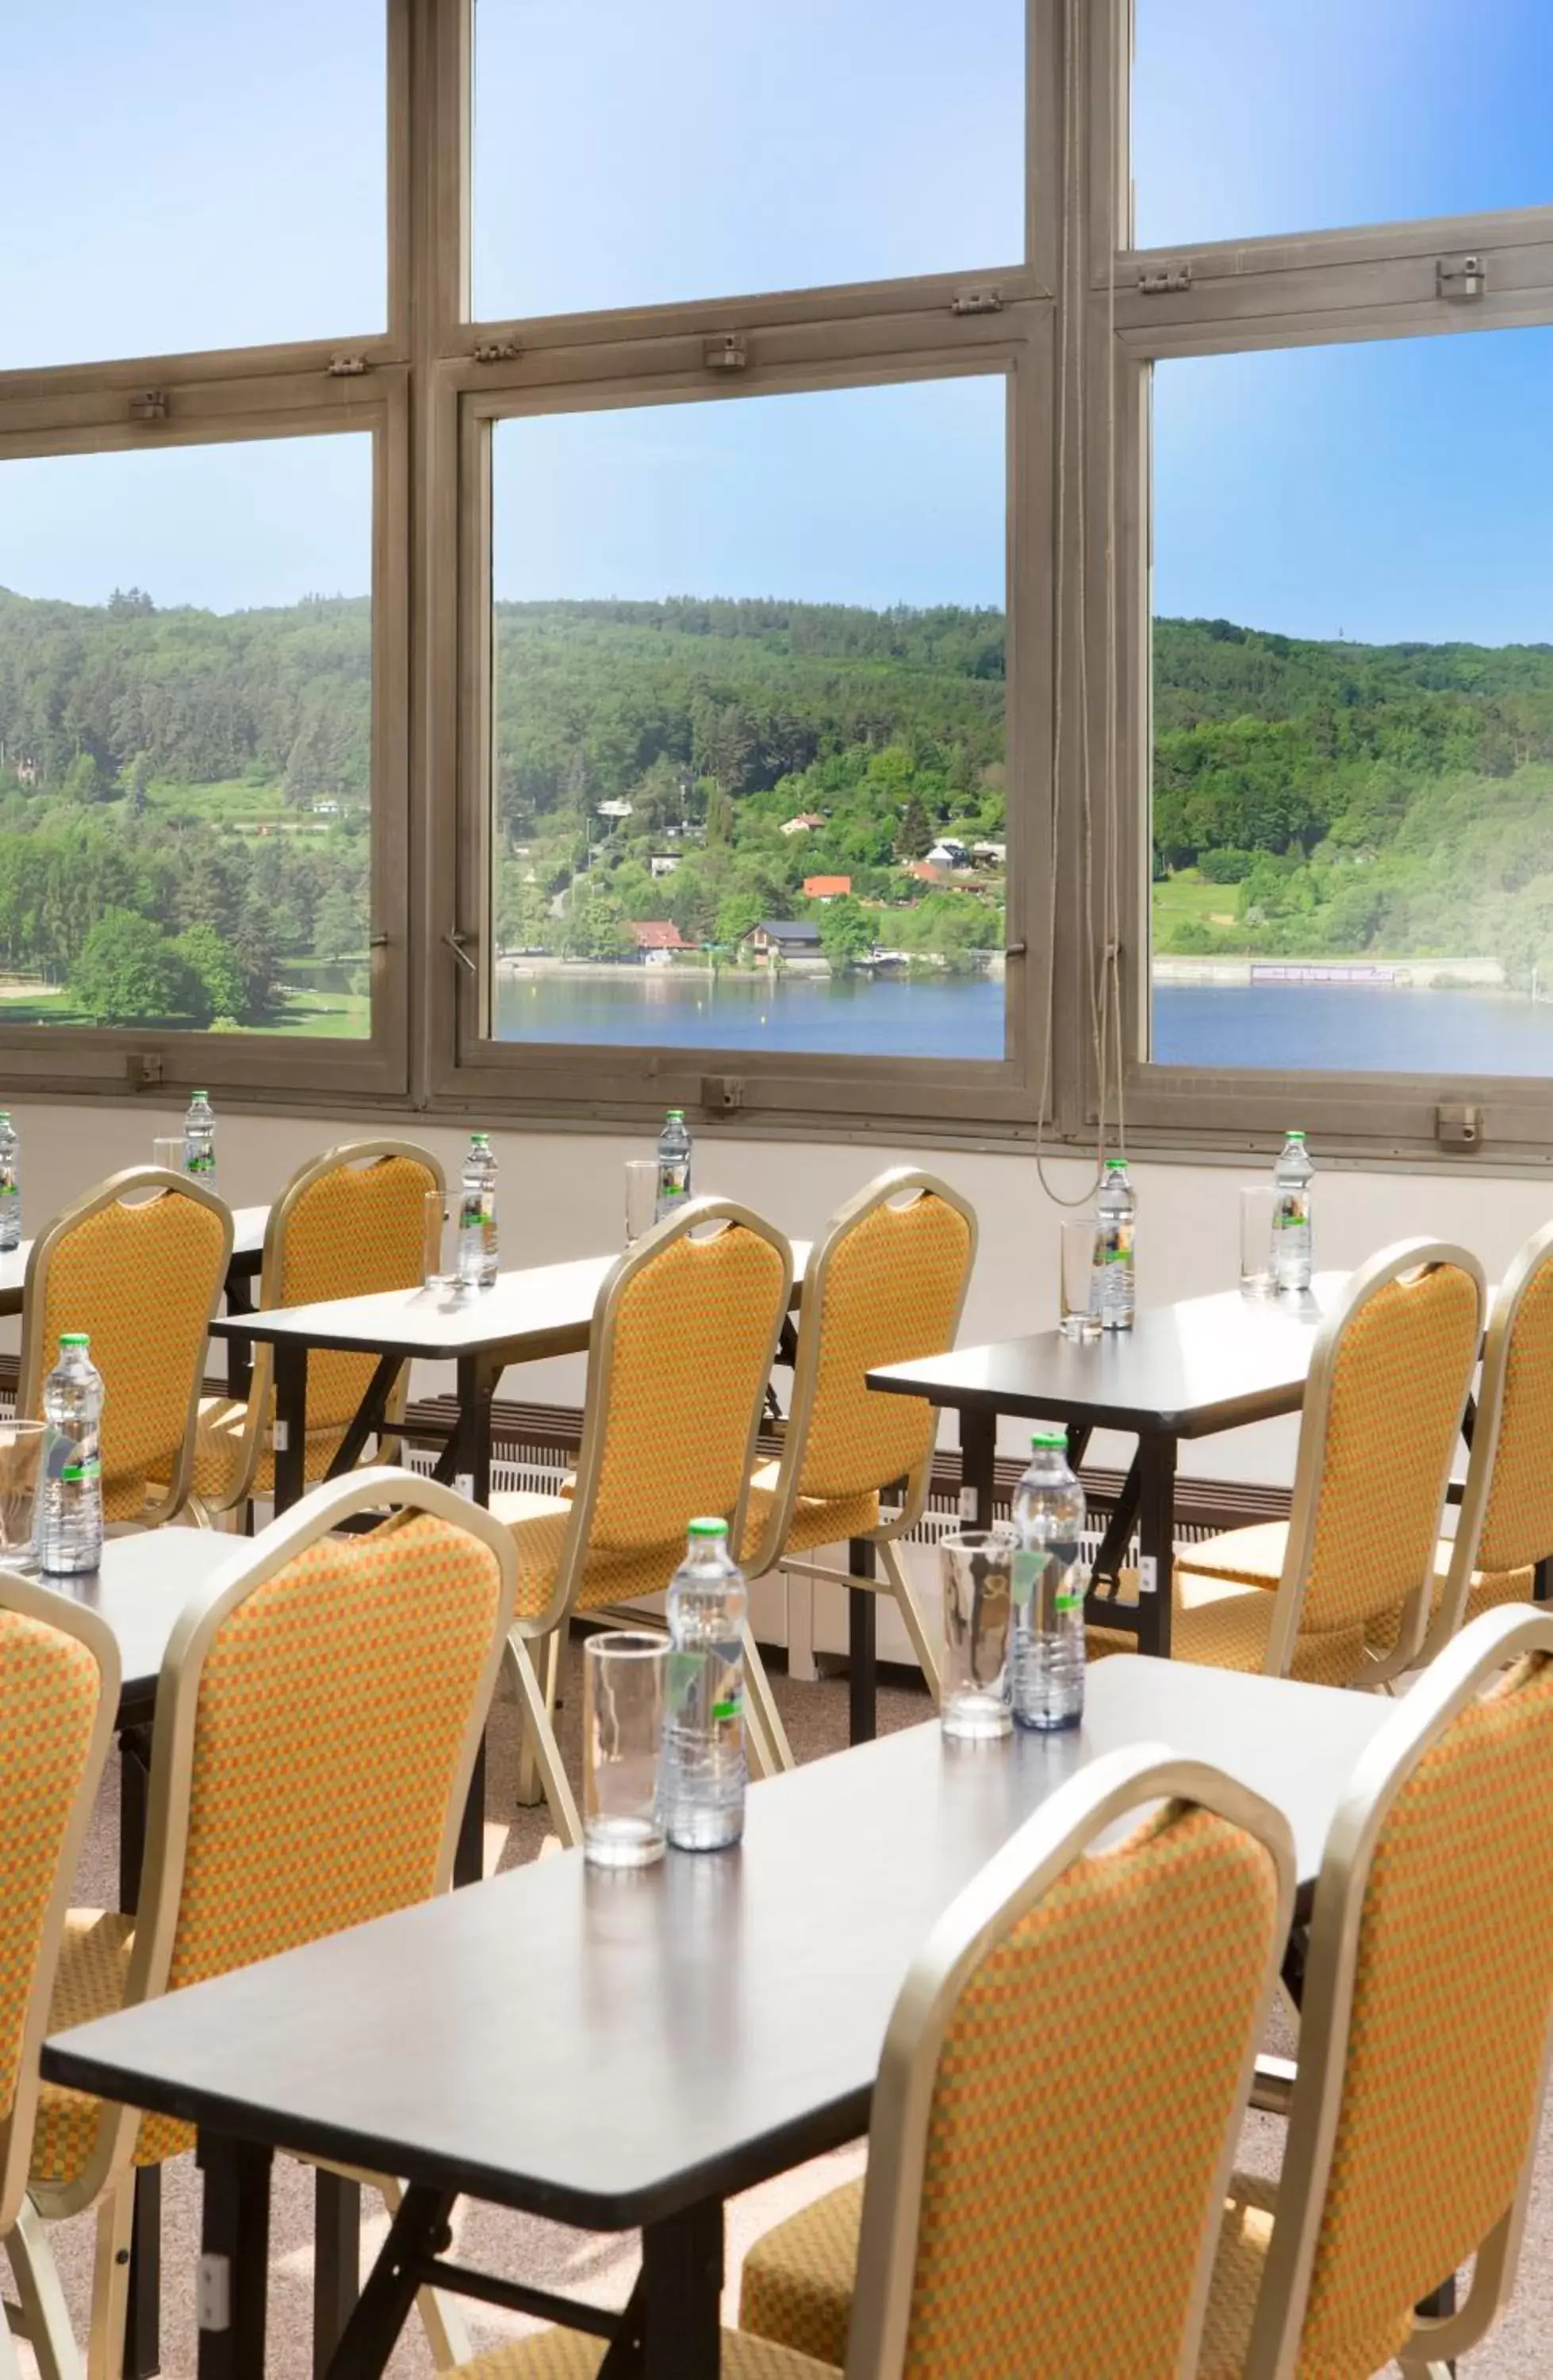 Banquet/Function facilities, Restaurant/Places to Eat in OREA Resort Santon Brno